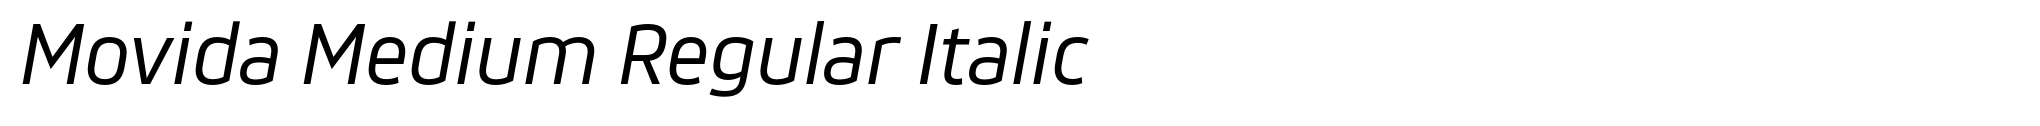 Movida Medium Regular Italic image